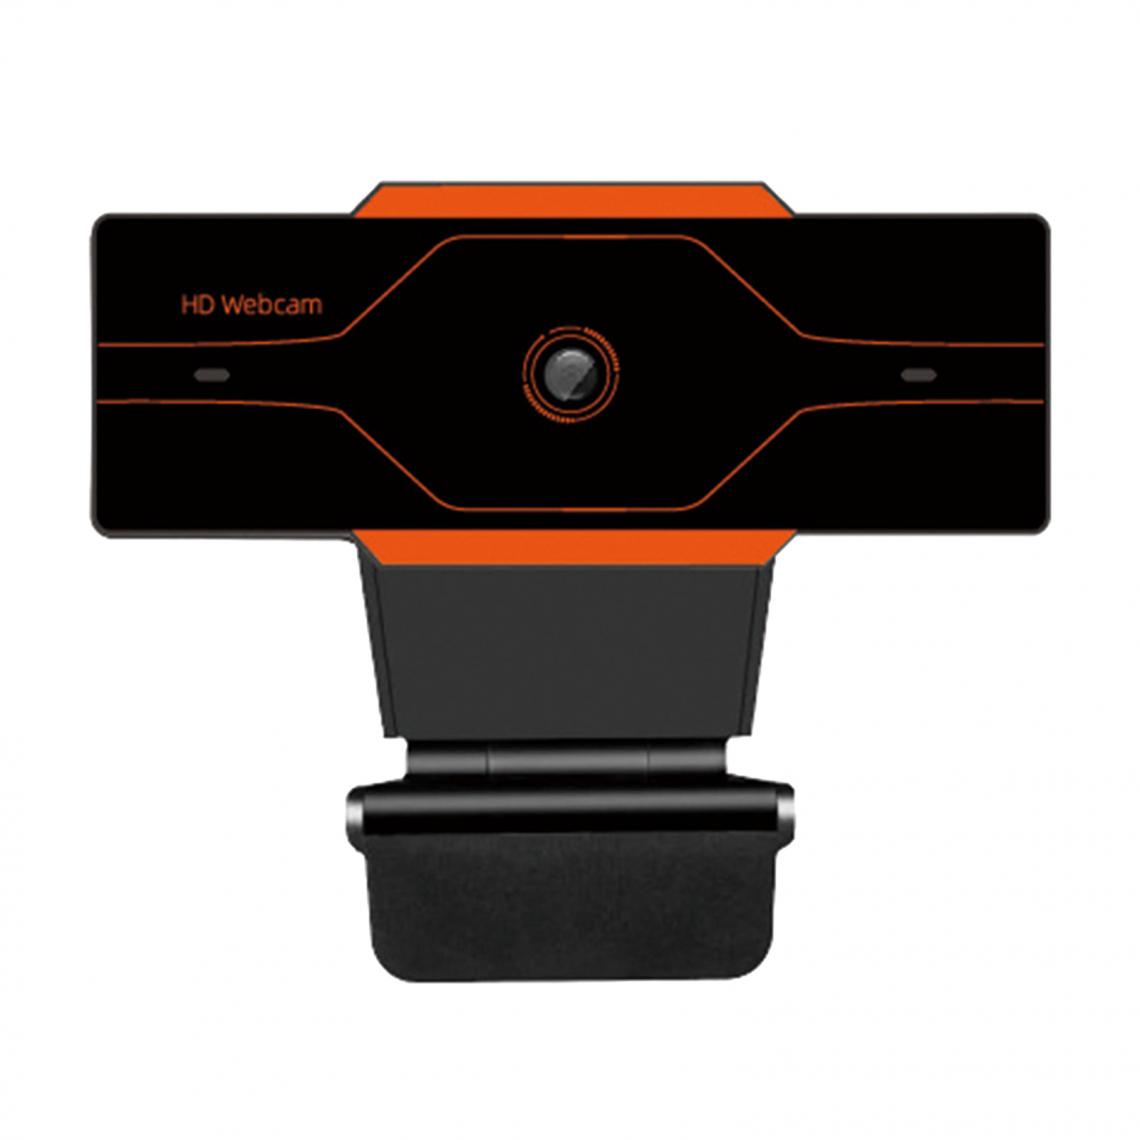 marque generique - Webcam HD Caméra Web Cam Microphone Pour PC Portable 1080P Argent - Webcam